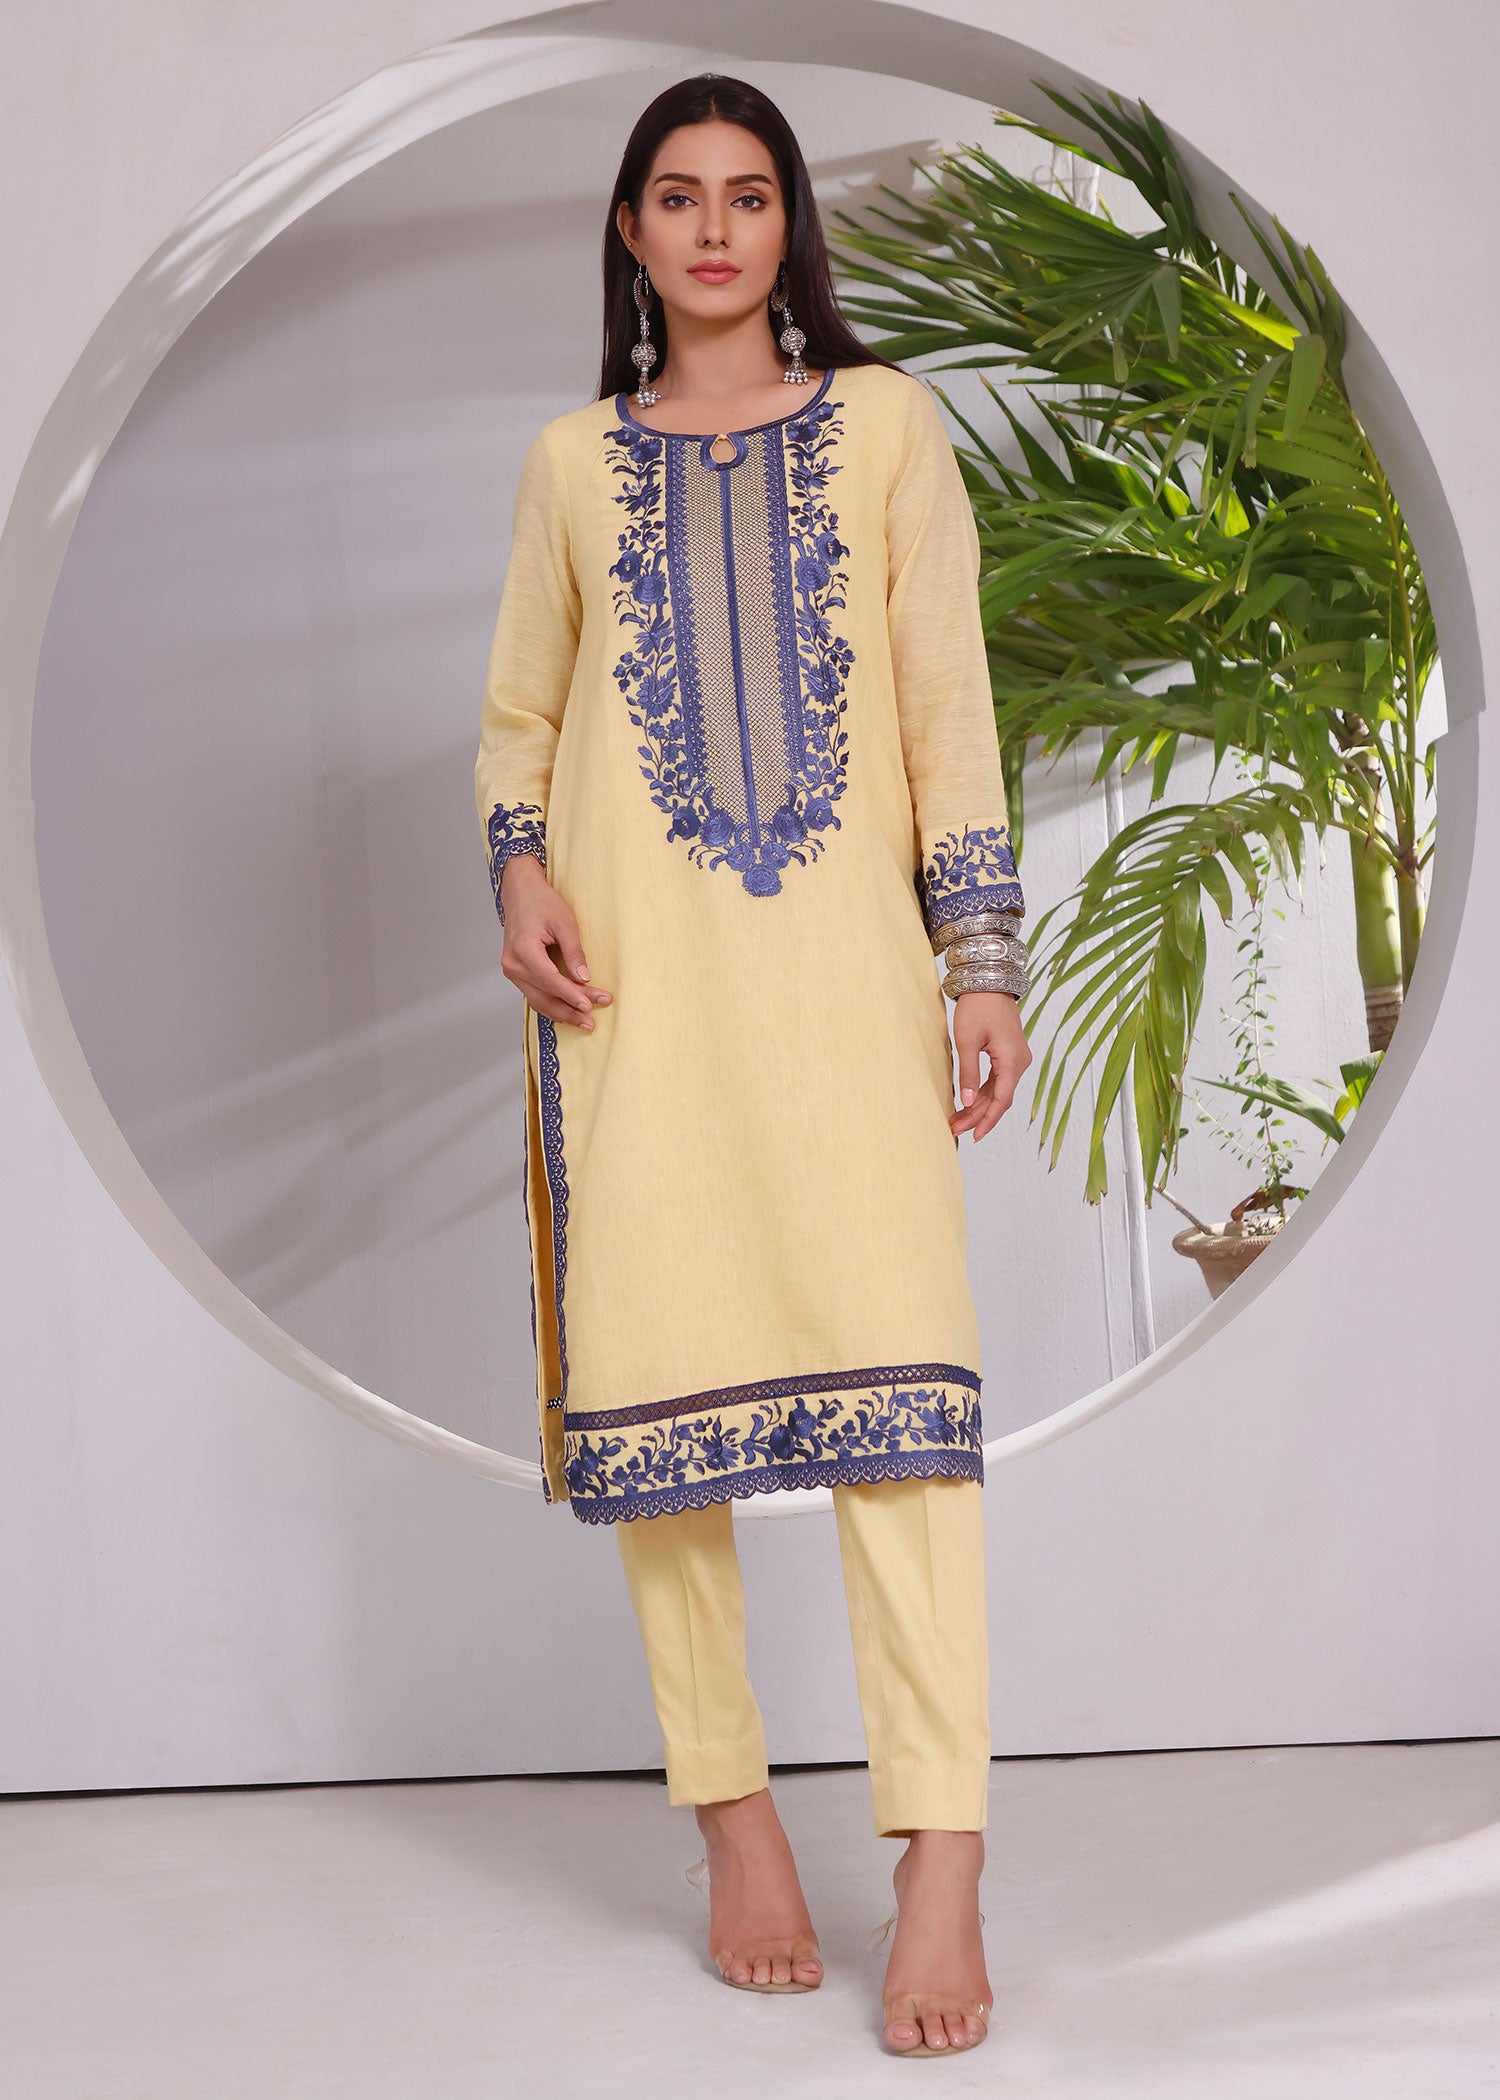 Rizwan Beyg  Karandi  Summer Spring Collection  Paksitani Pret Wear Luxury  